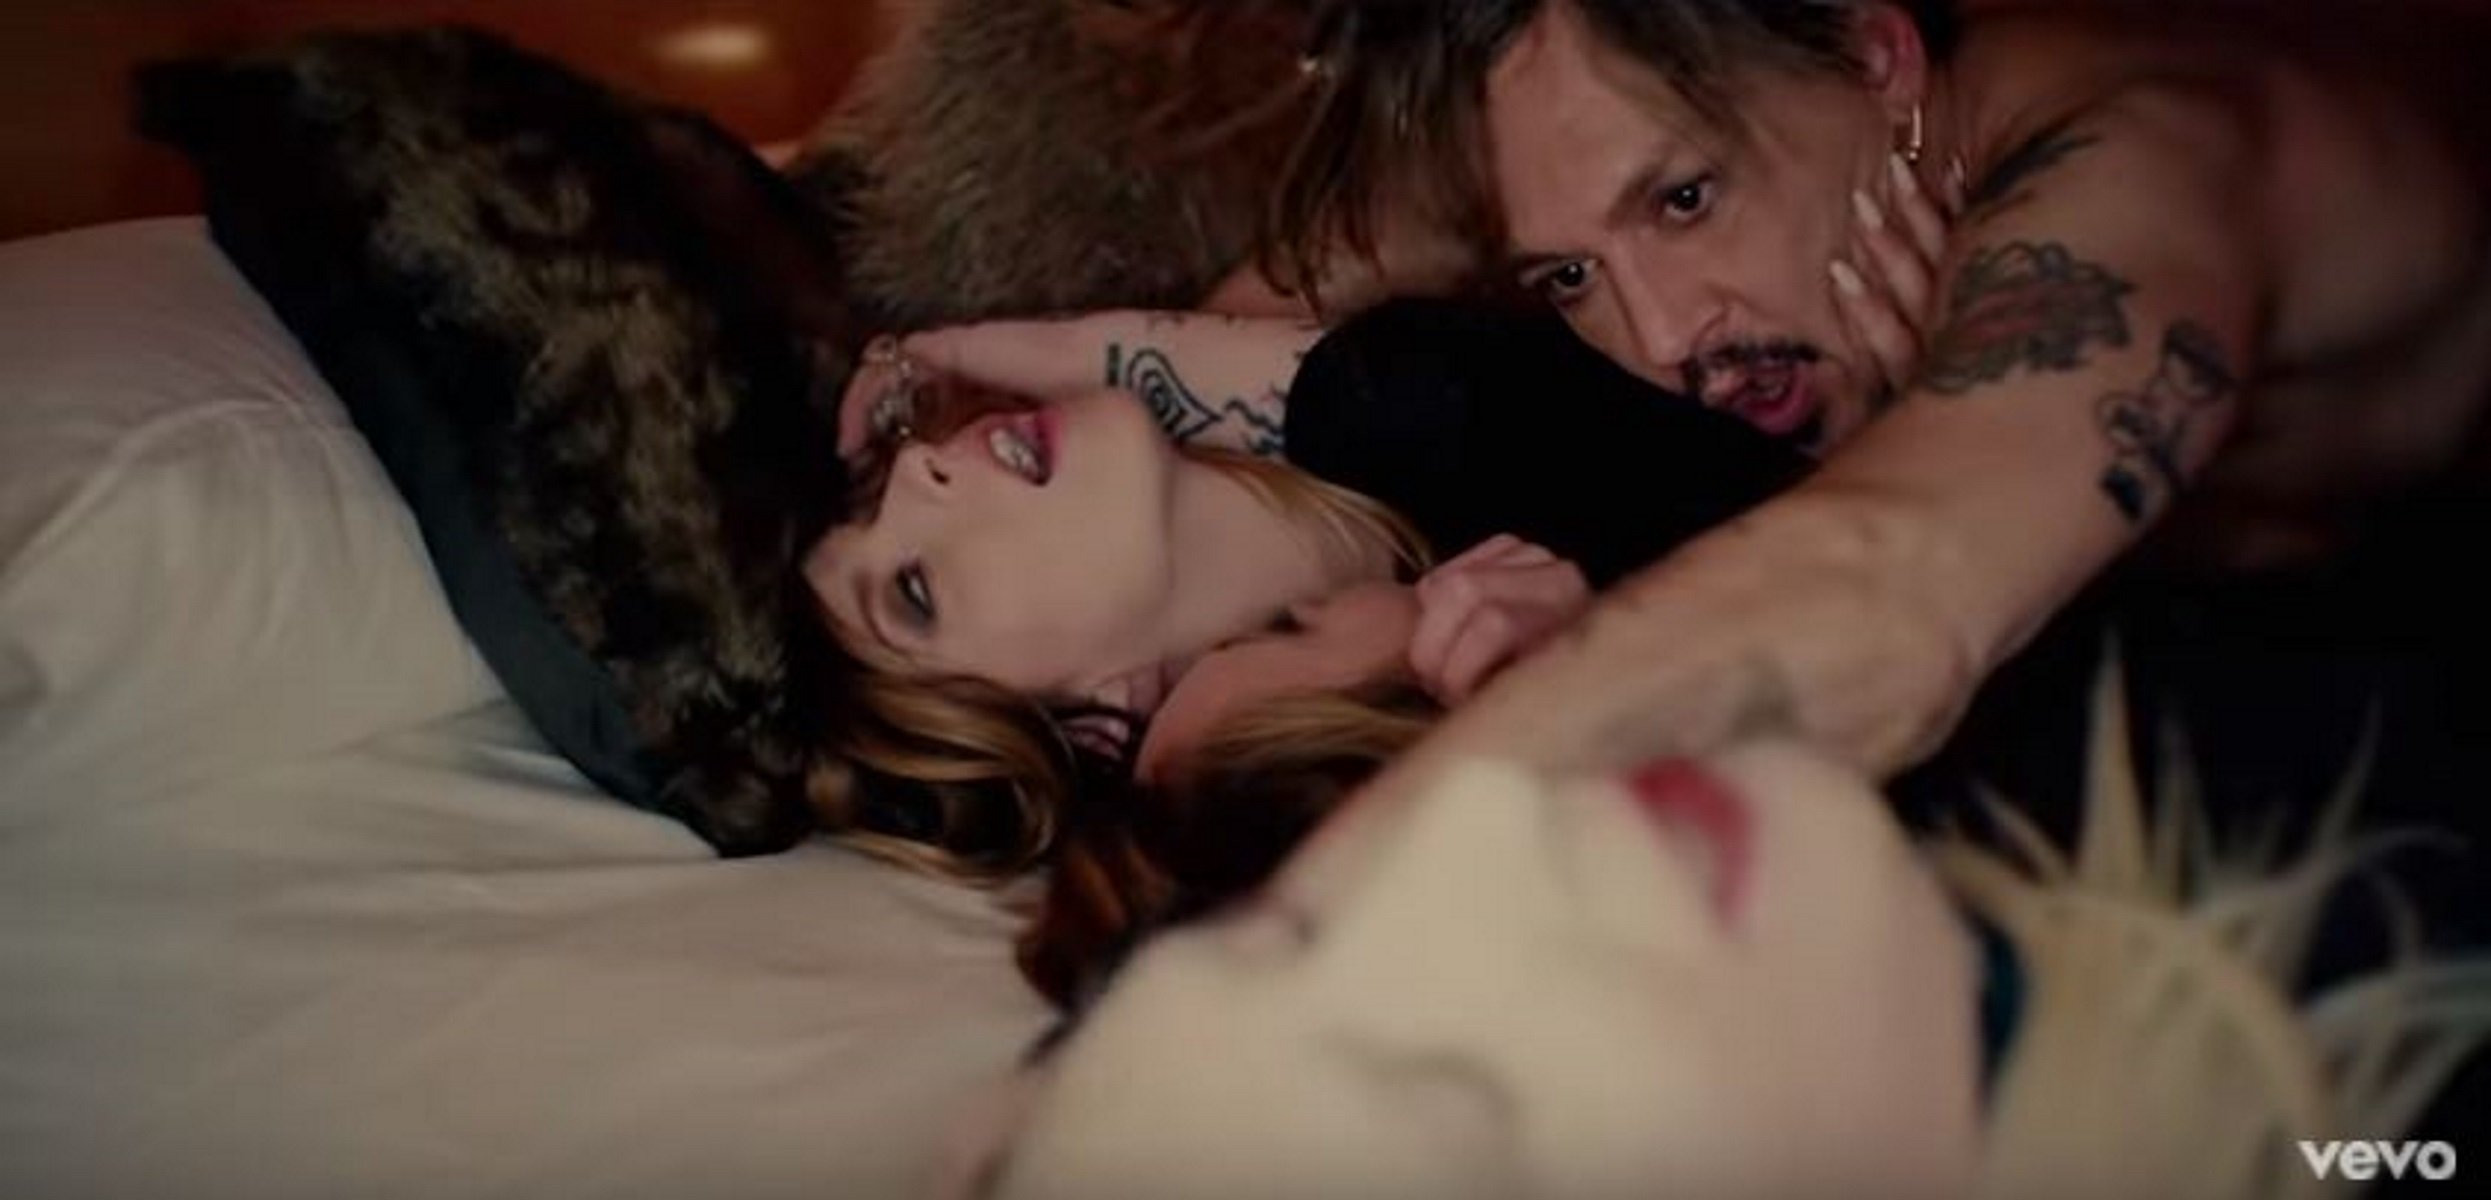 La excéntrica orgía de Johnny Depp en el polémico videoclip de Marilyn Manson